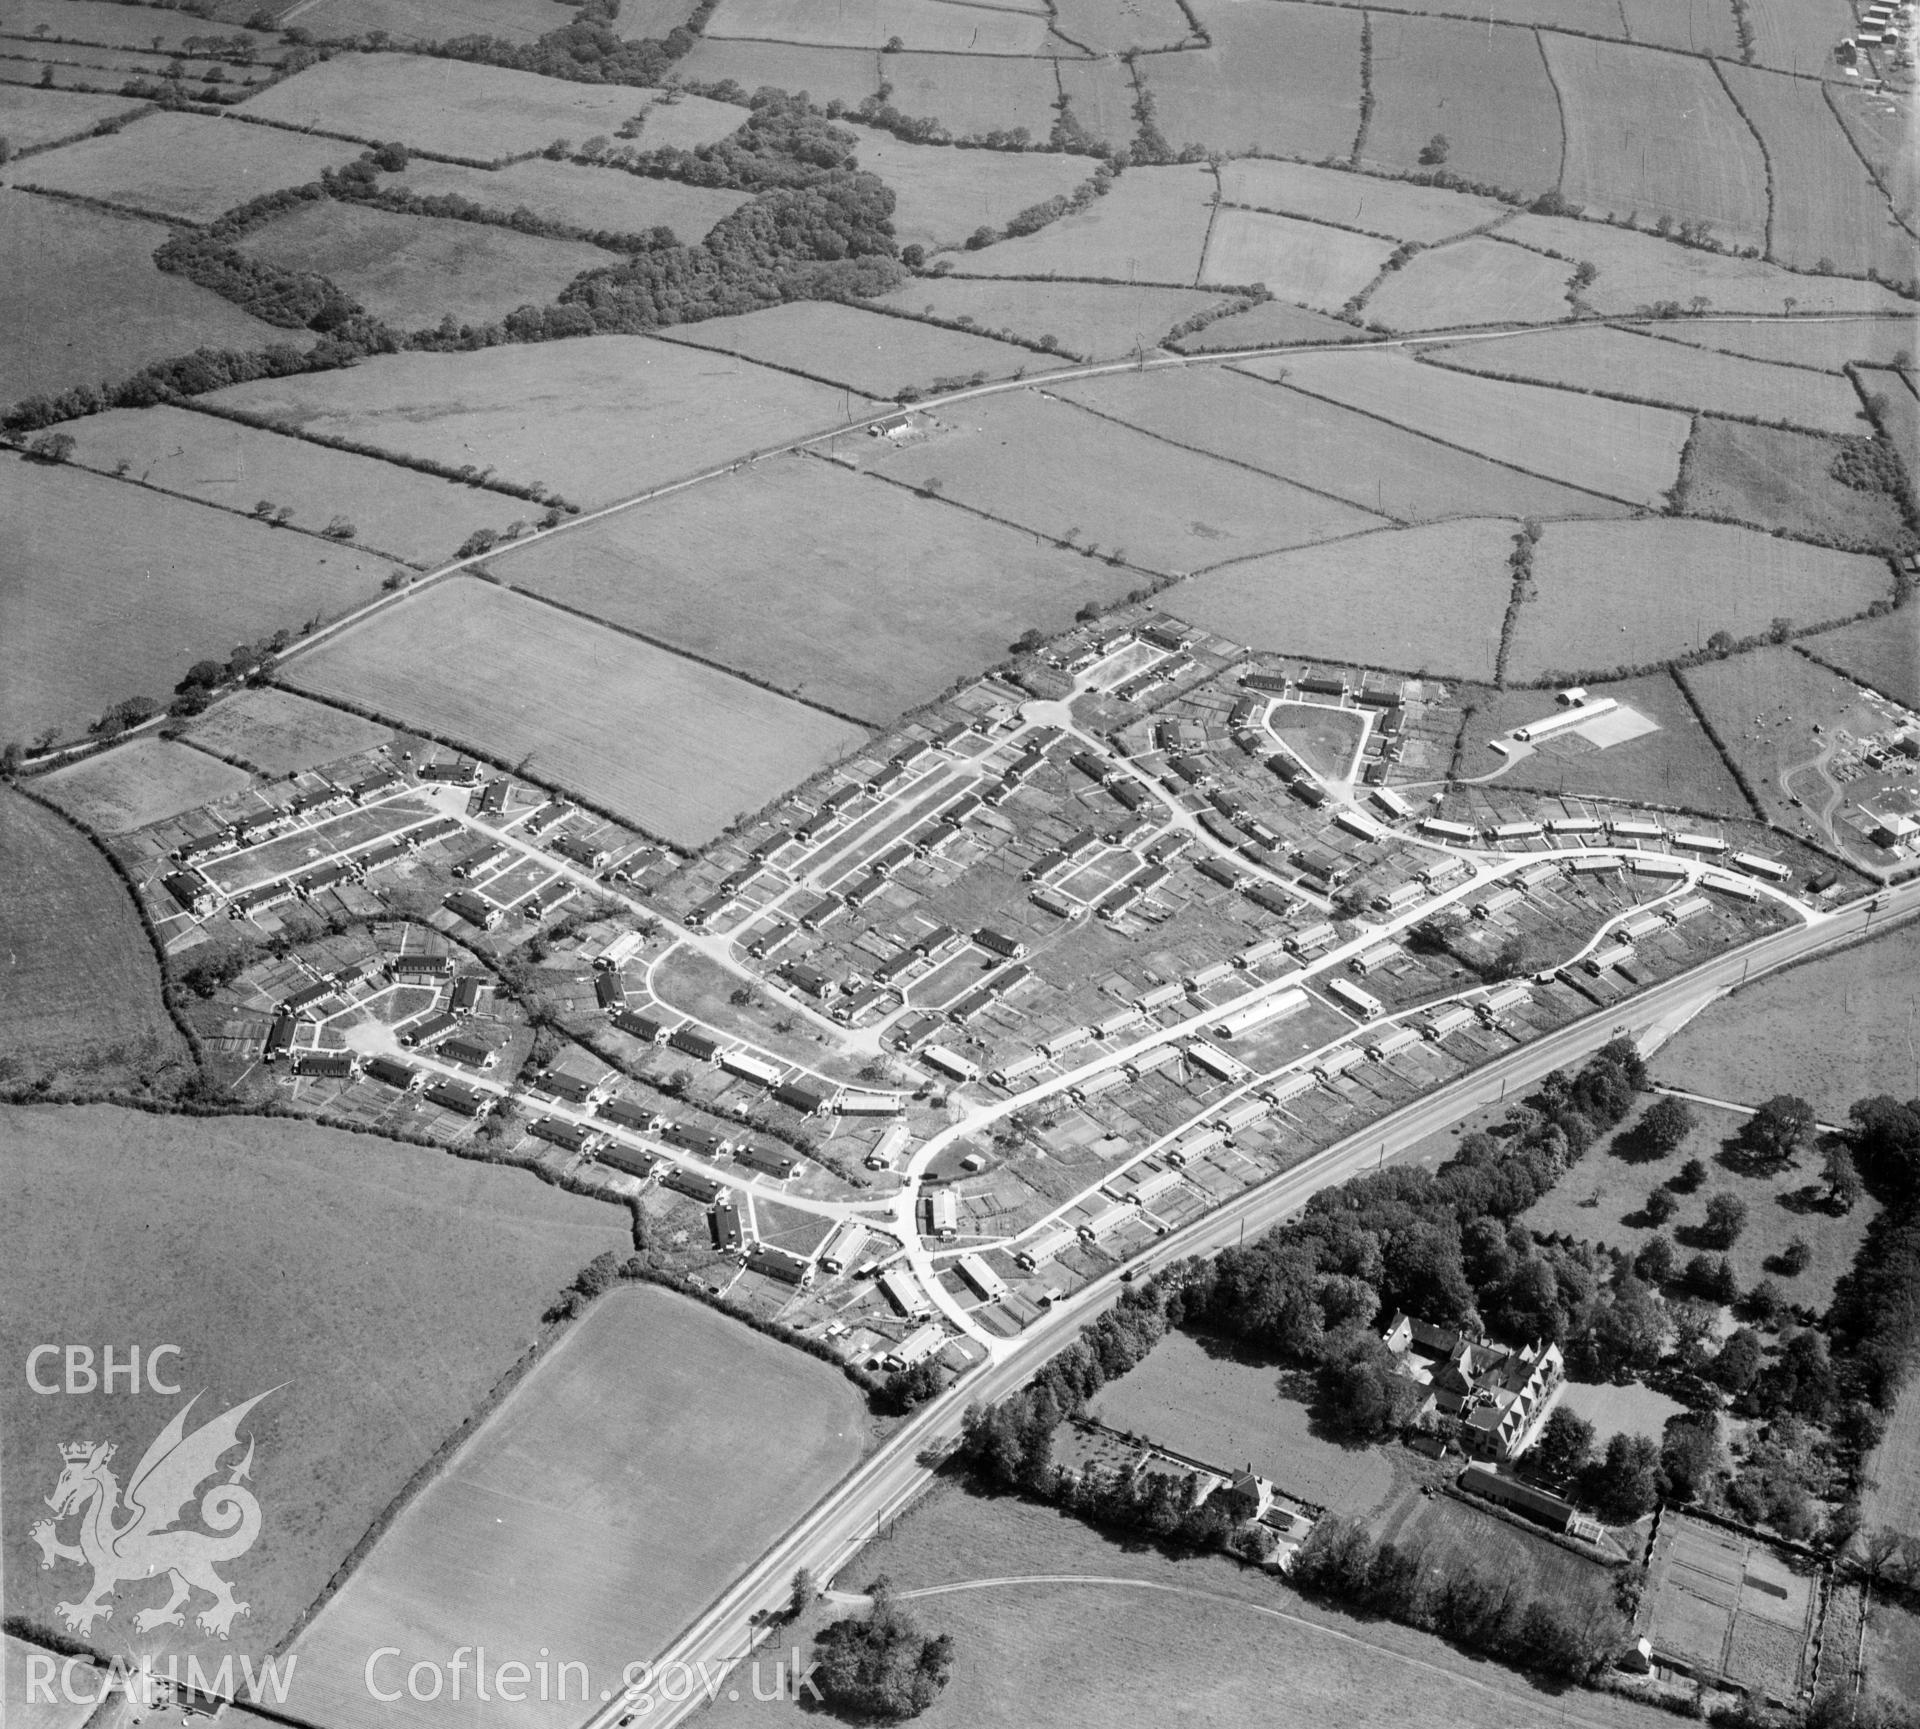 View of prefab housing estate, later rebuilt as Bryntirion, Bridgend